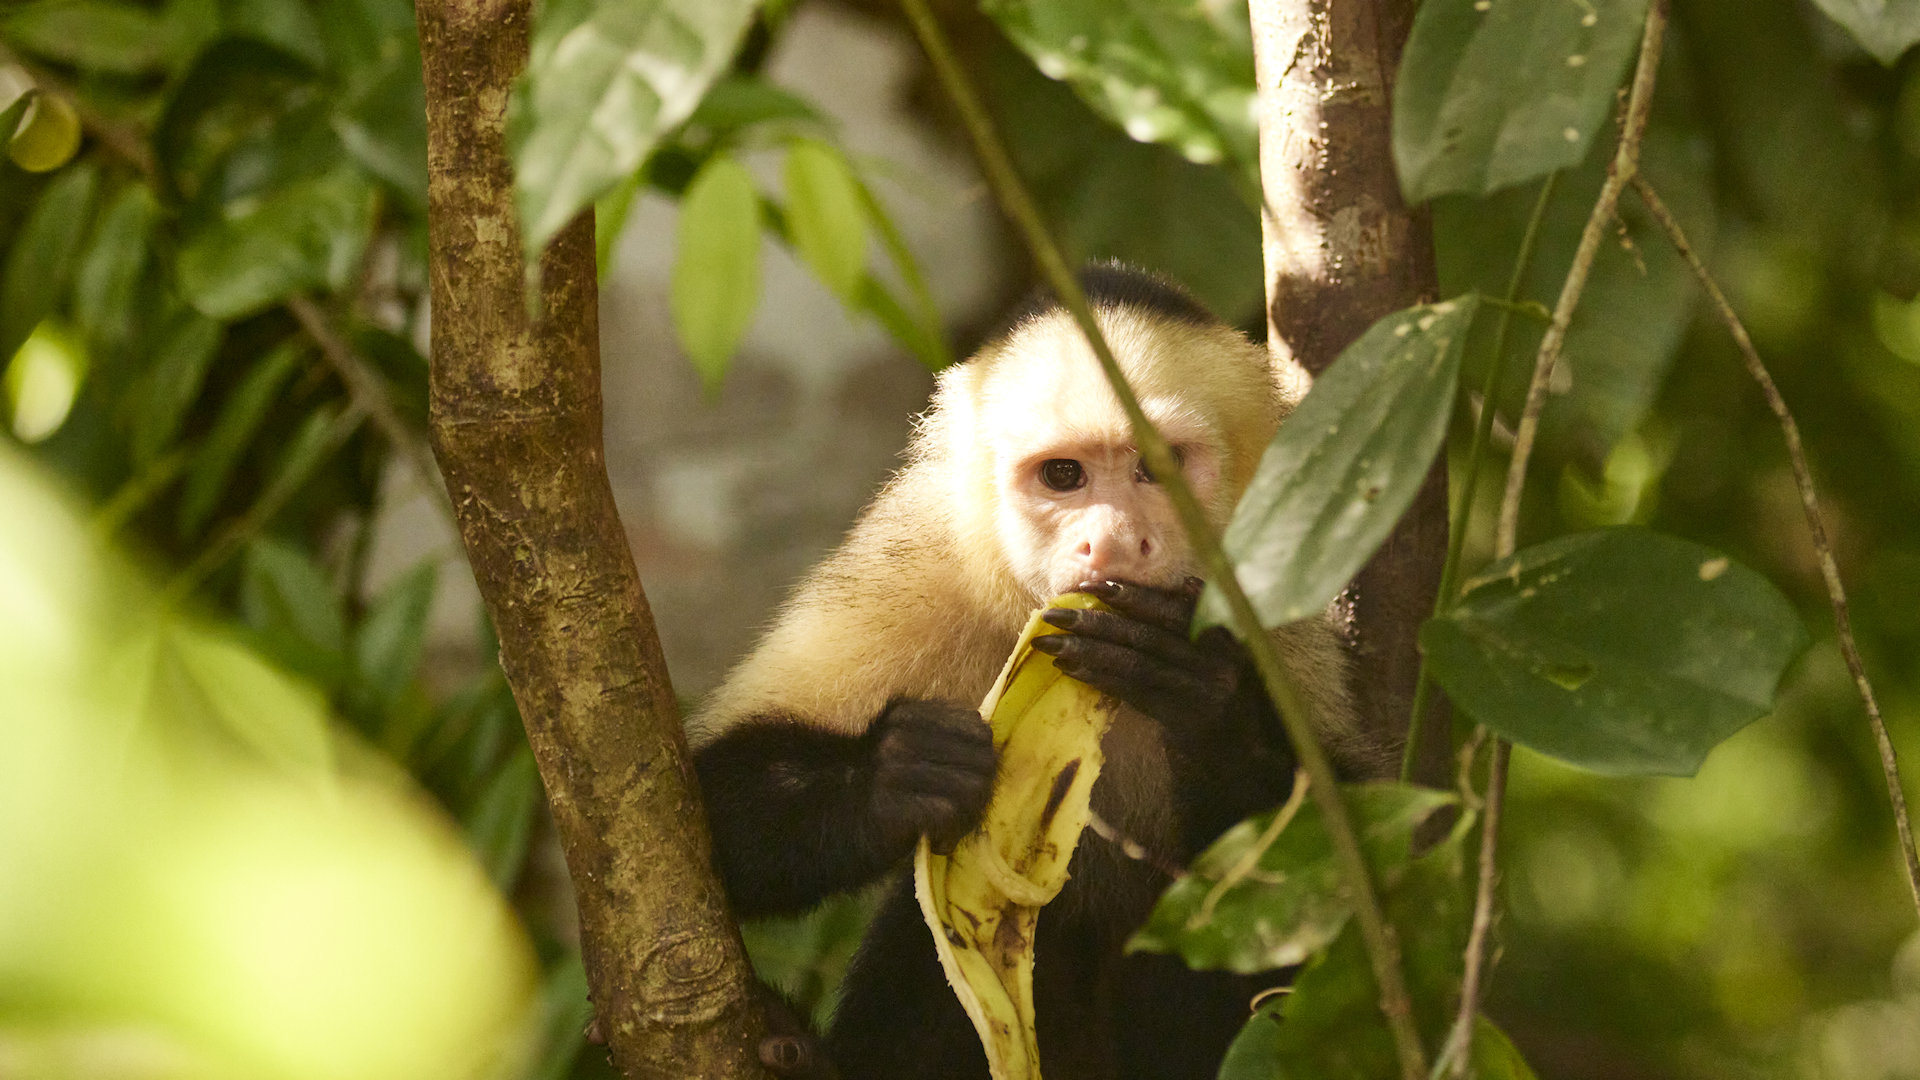 Capuchin monkey eating banana - image 8